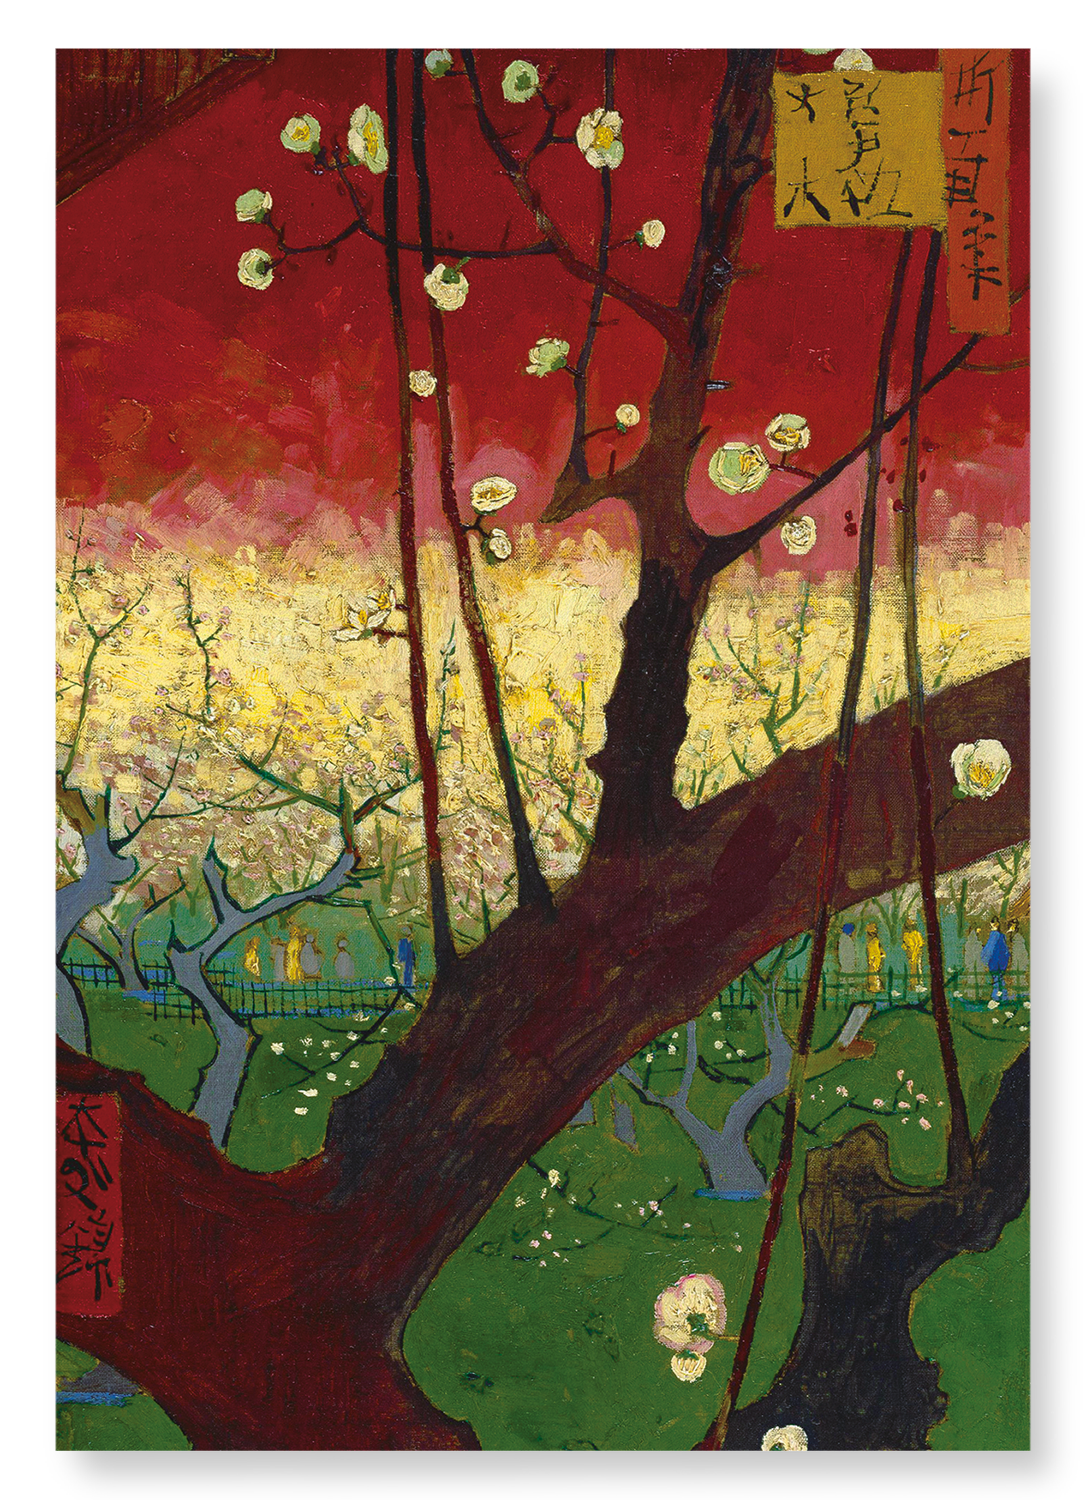 JAPONAISERIE FLOWERING PLUM BY VAN GOGH: Painting Art Print